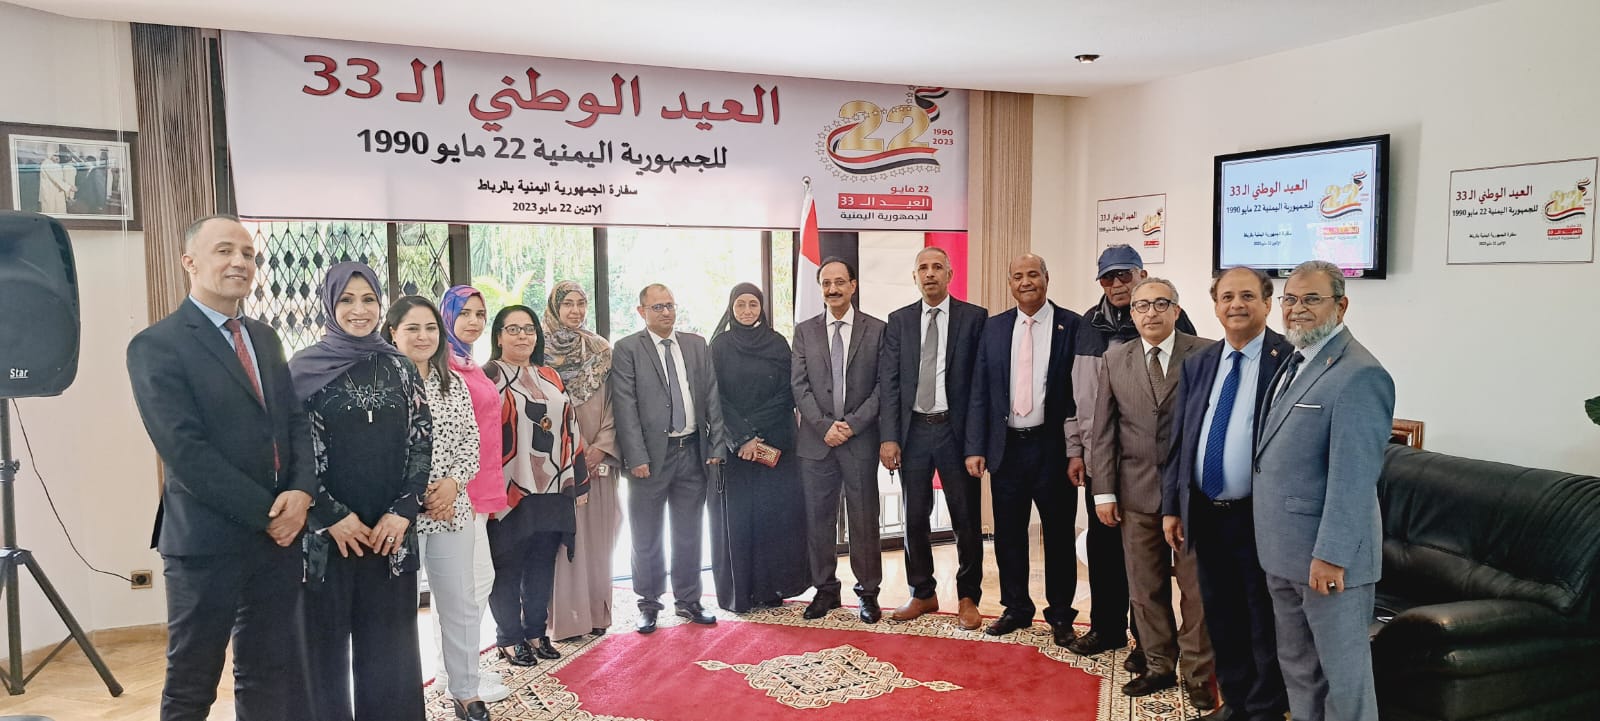 سفارة بلادنا بالرباط تحتفي بالعيد الوطني الـ 33 للجمهورية اليمنية